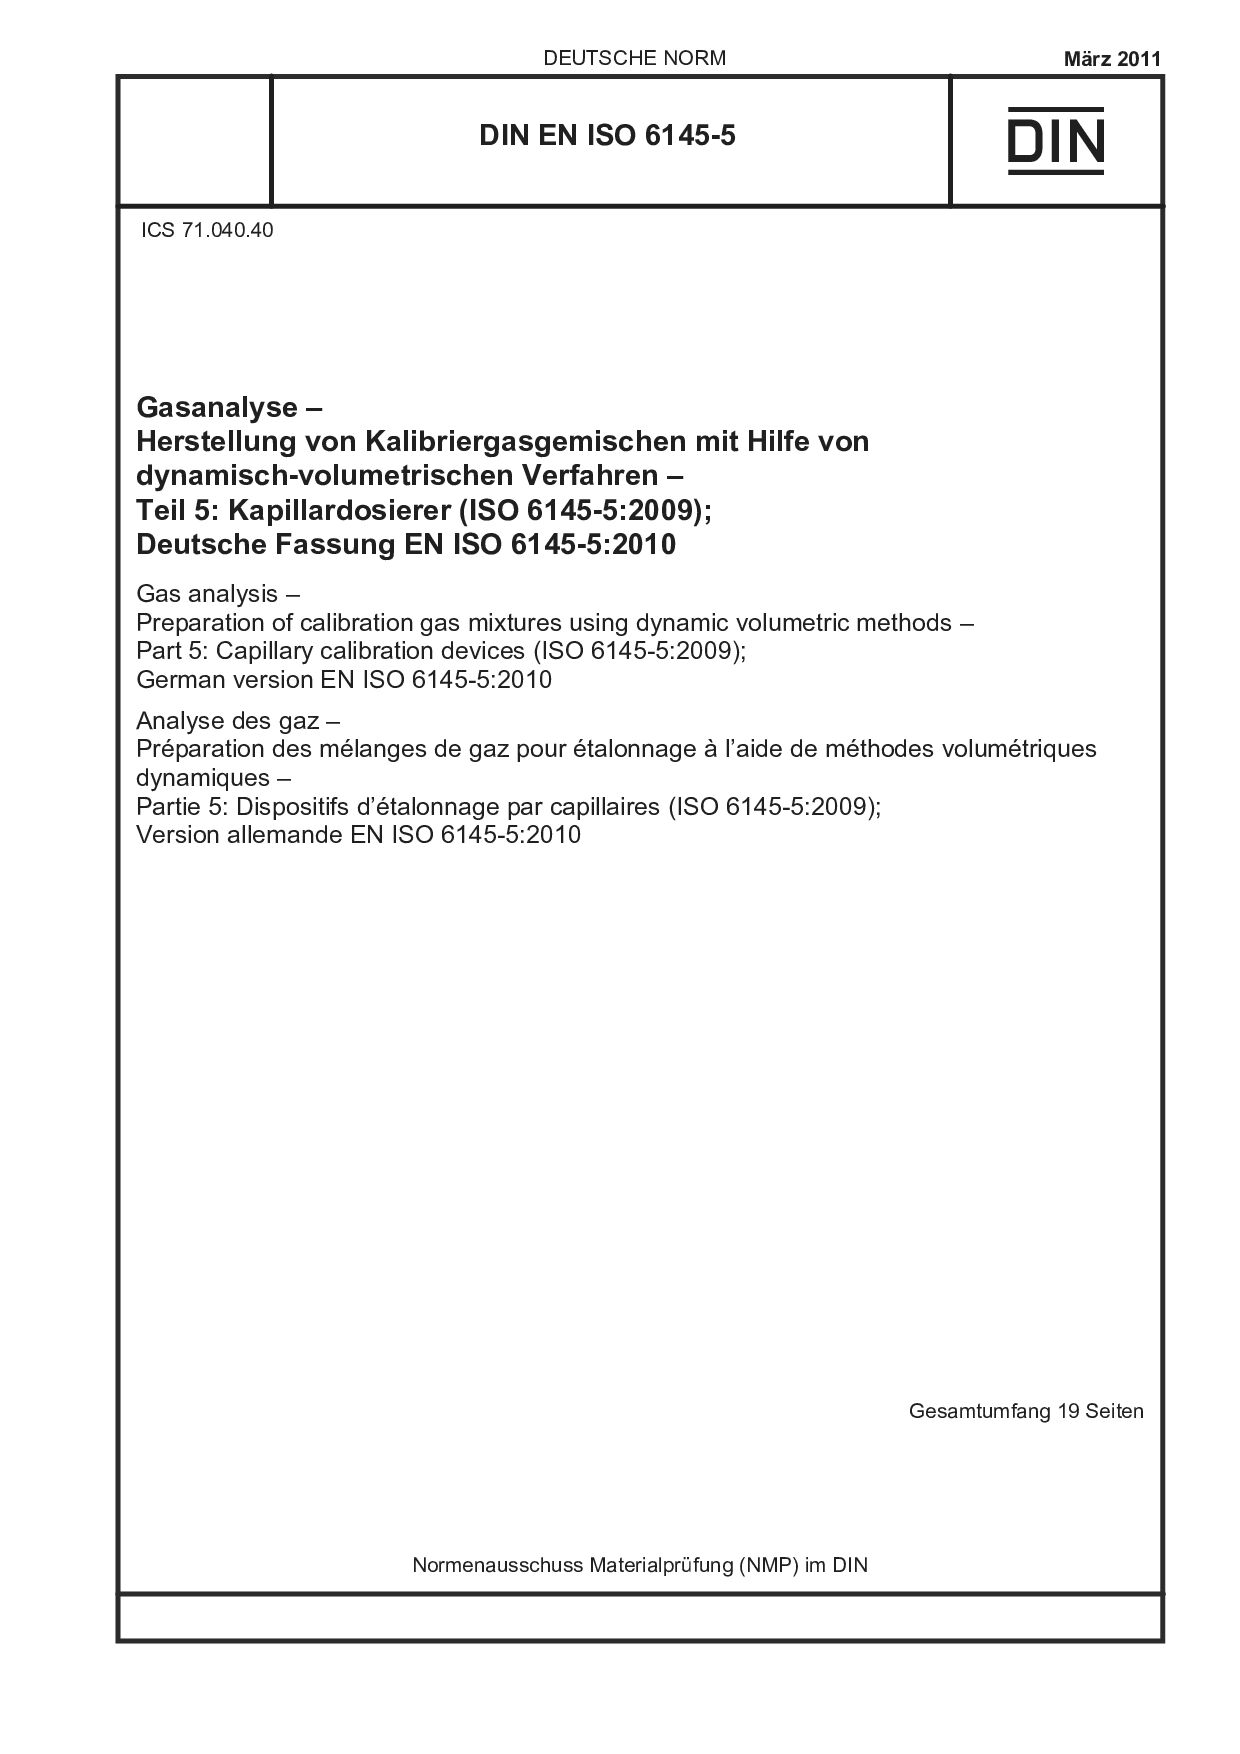 DIN EN ISO 6145-5:2011